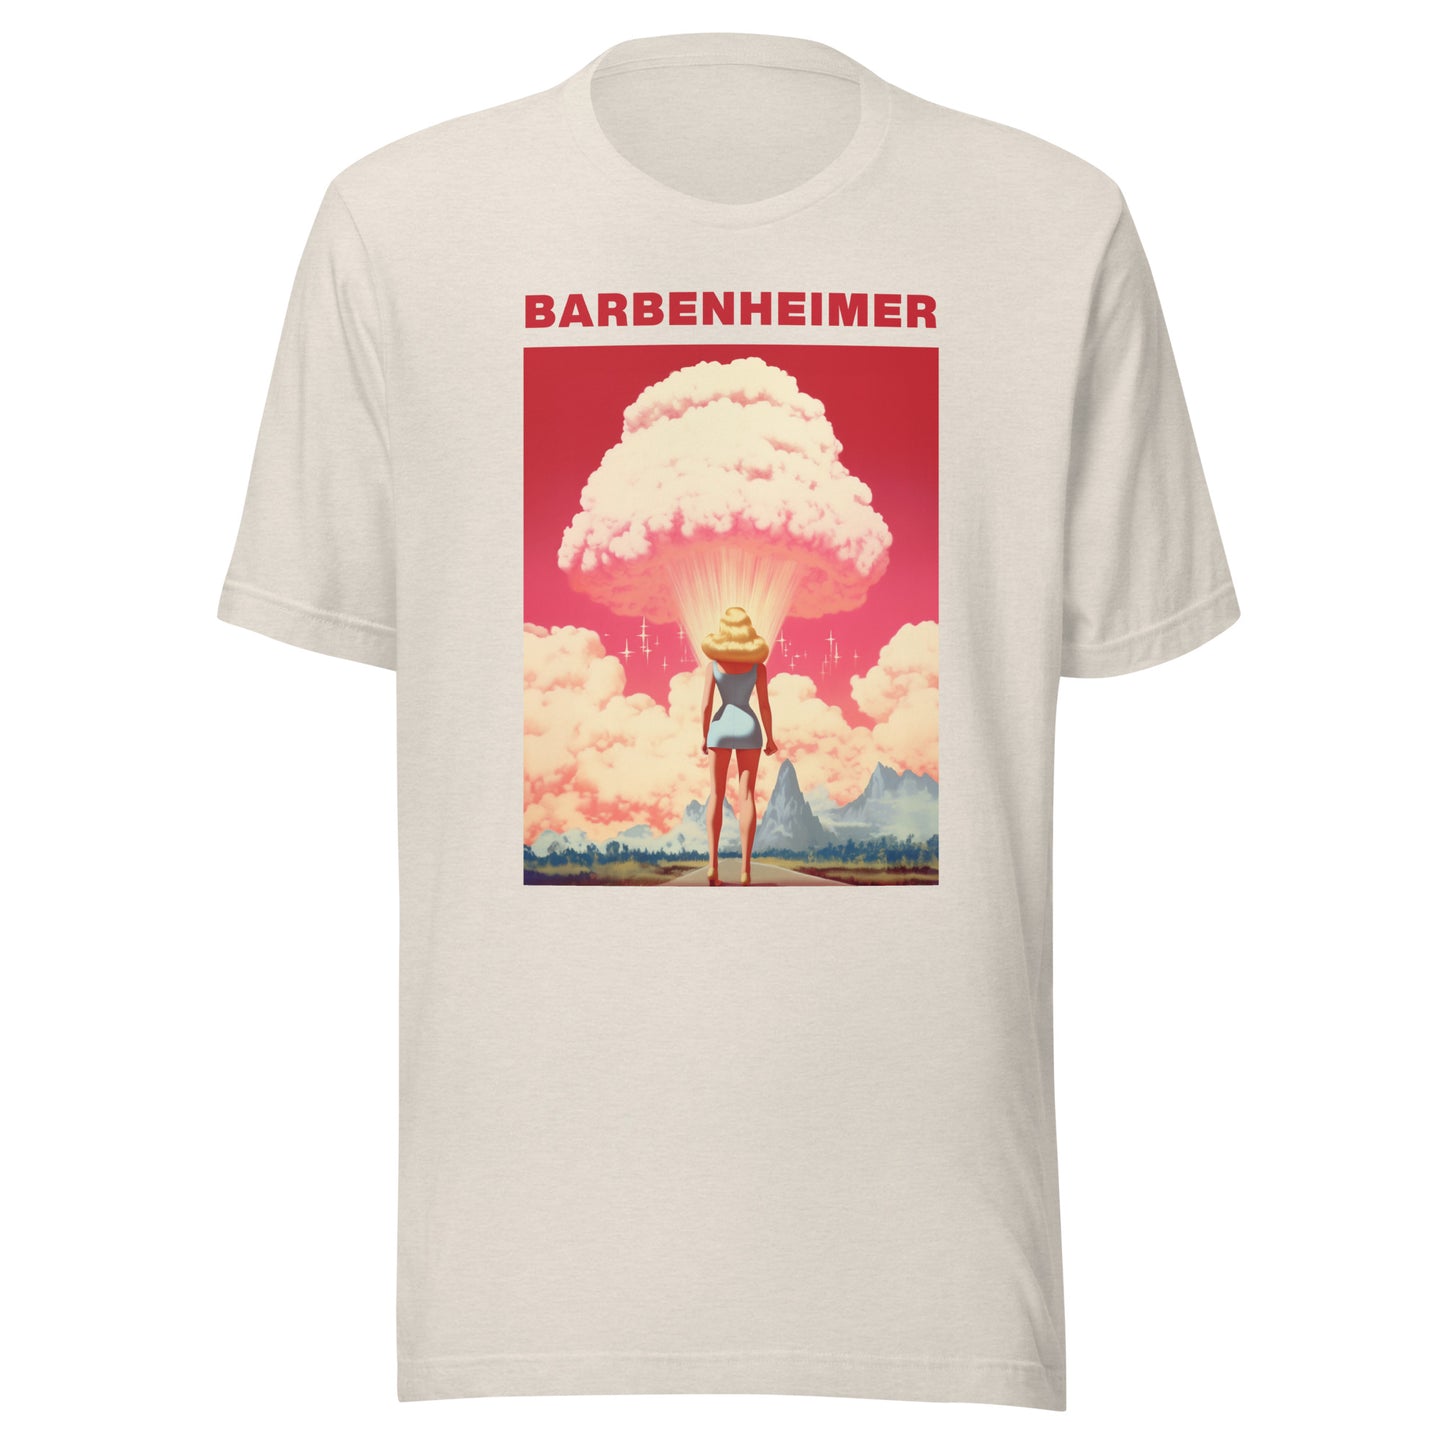 The Original 'Barbenheimer' Tee